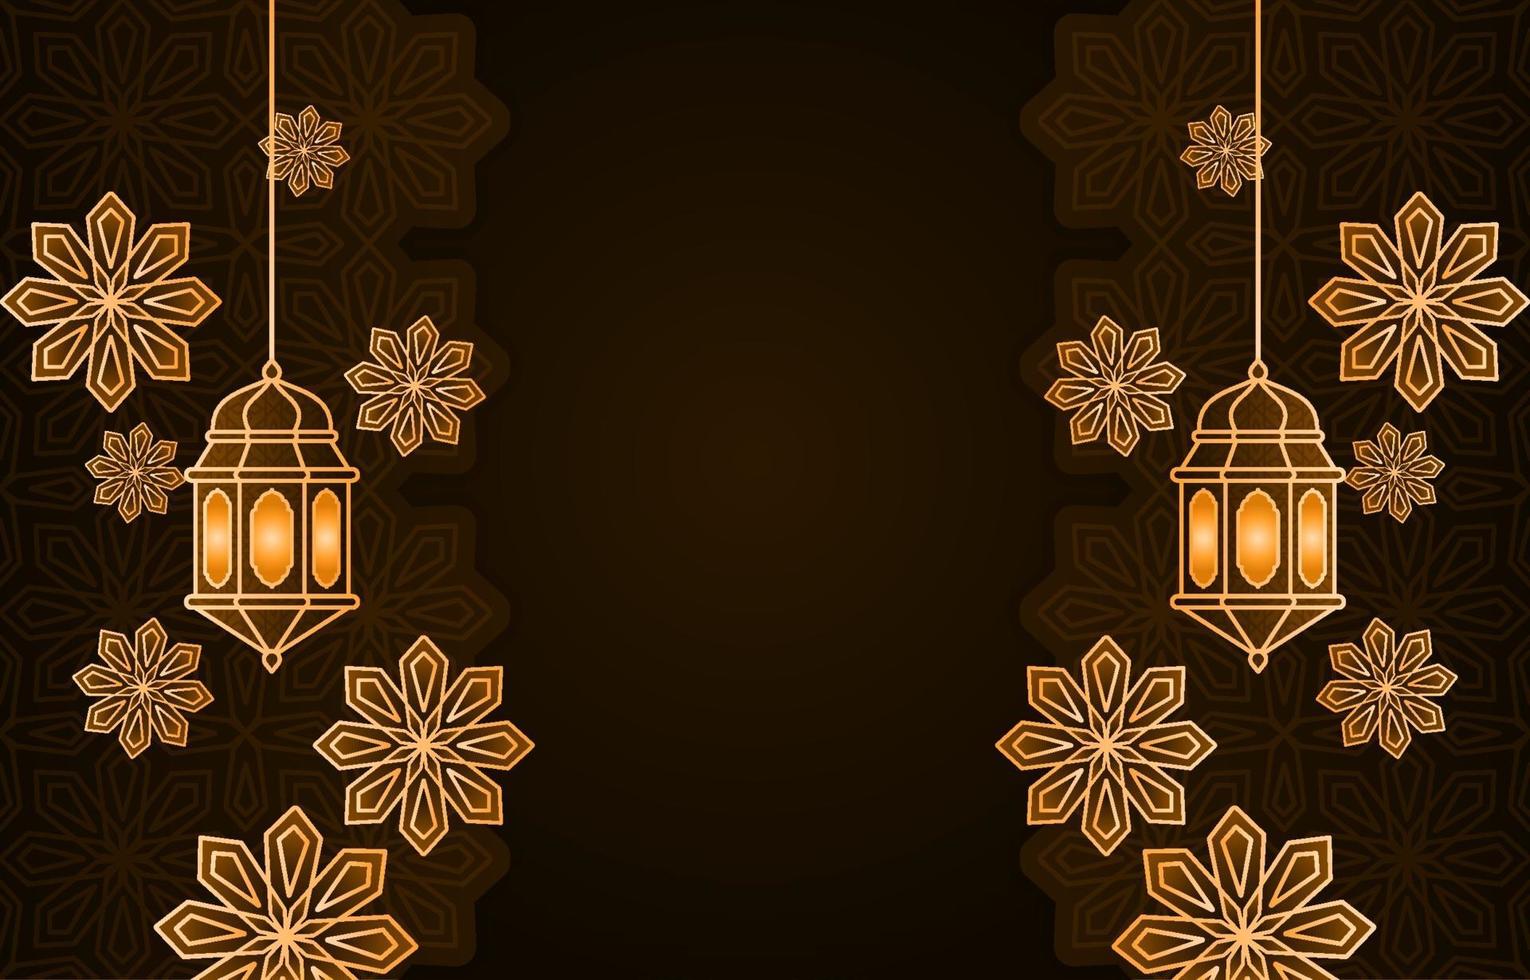 linterna árabe islámica para el fondo de ramadan kareem eid mubarak vector